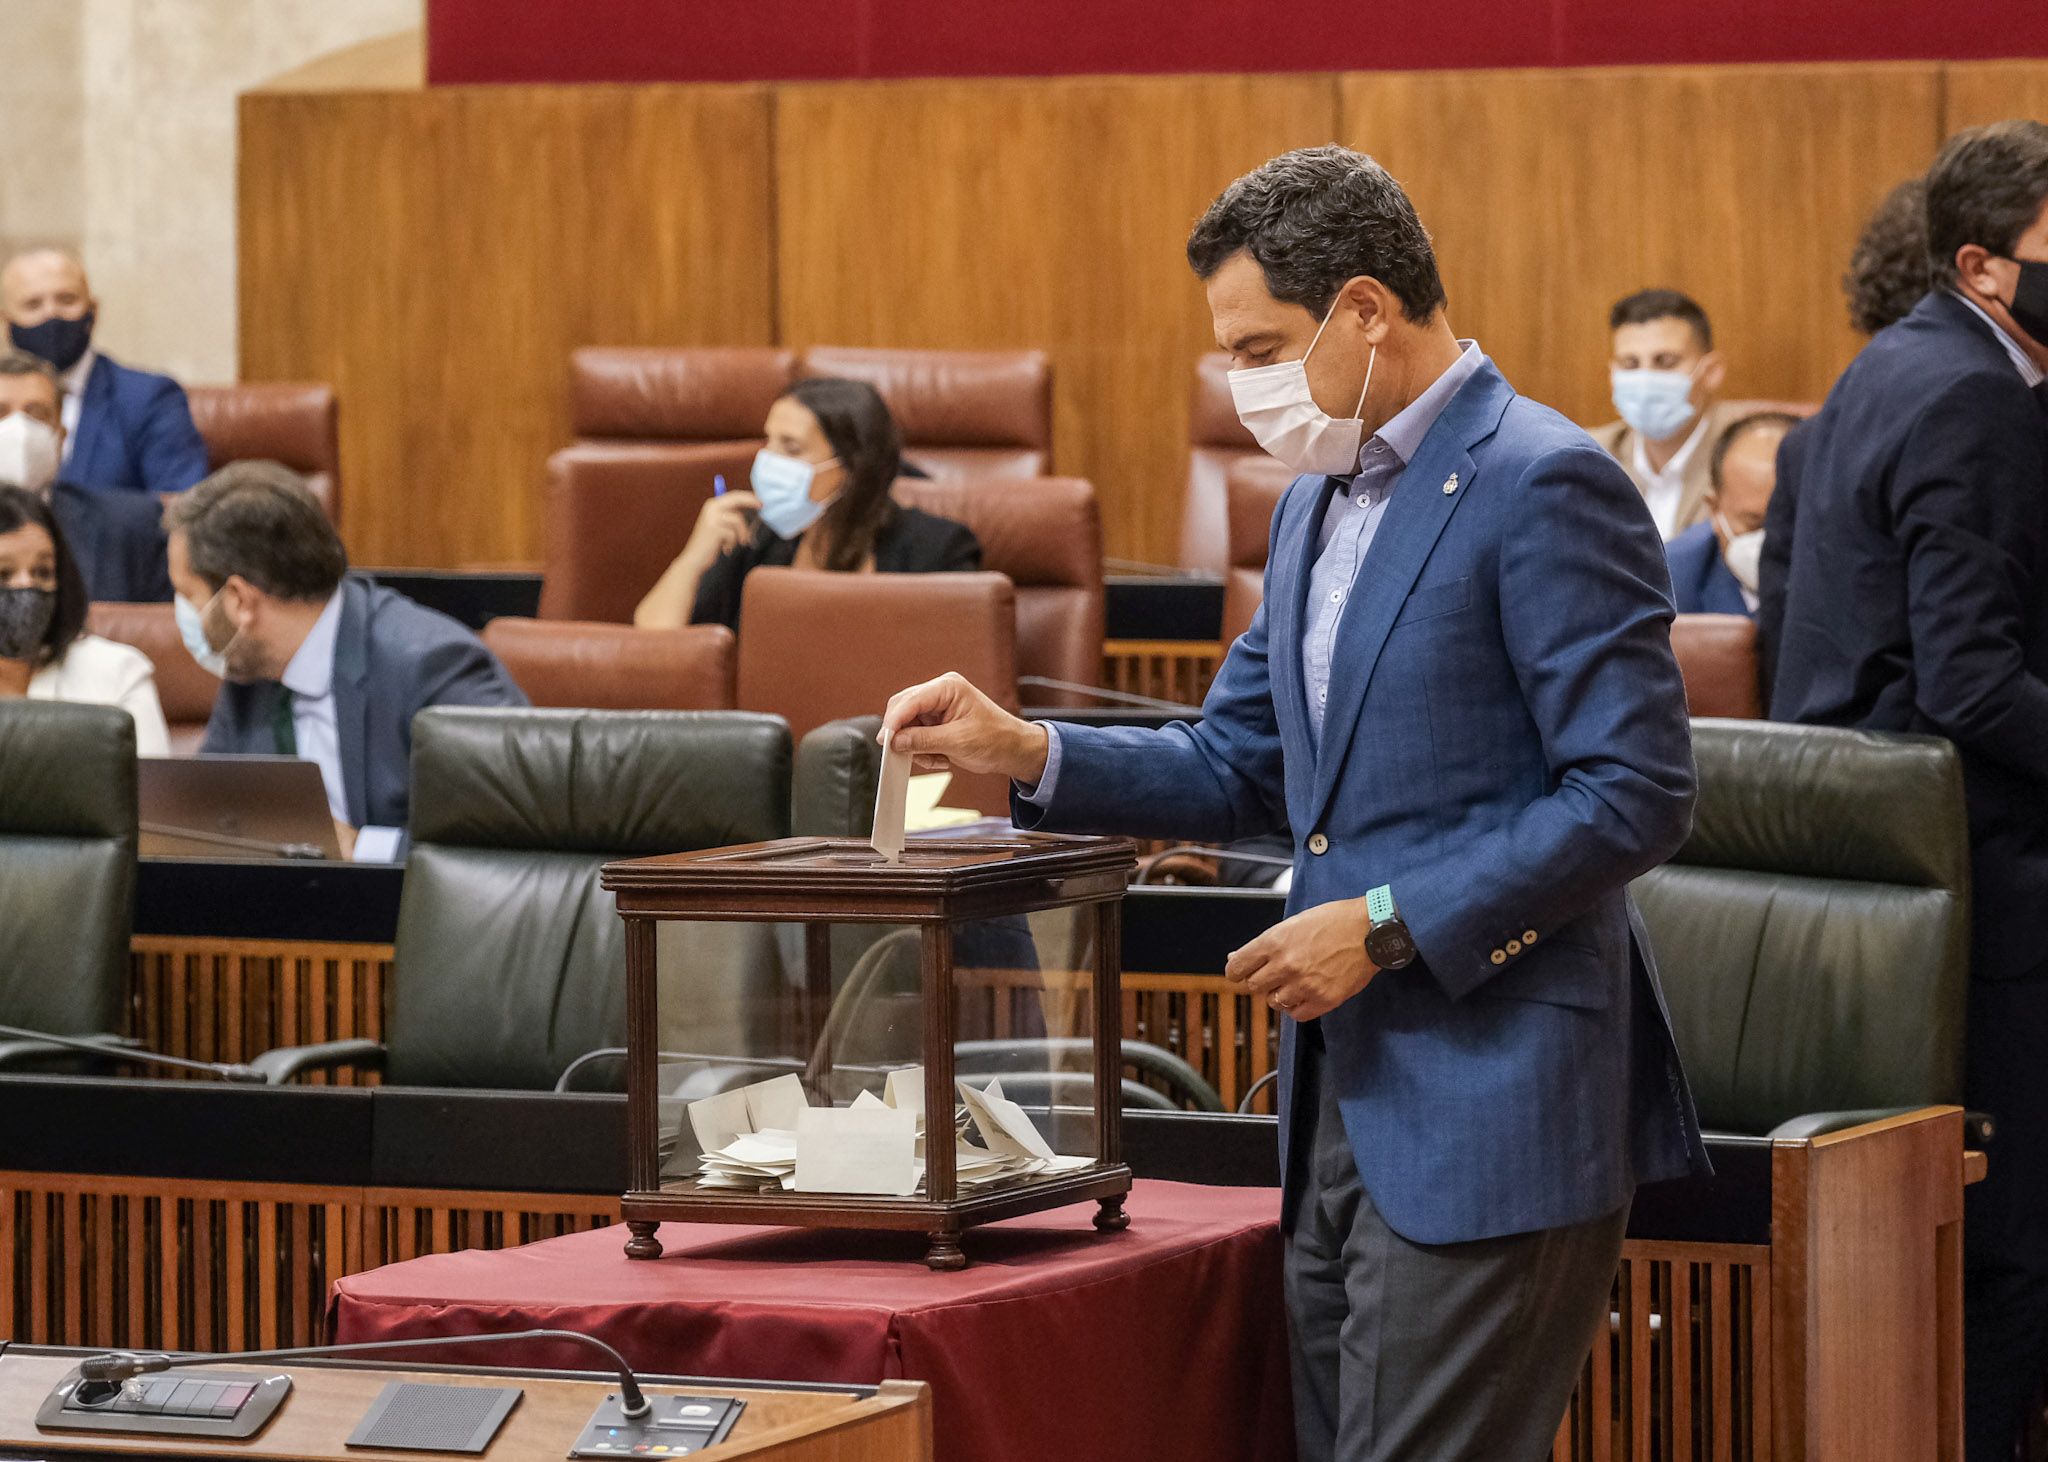 Polémicos sobresueldos de los parlamentarios andaluces. Moreno Bonilla, este pasado miércoles, en una votación en el Parlamento andaluz. PARLAMENTO